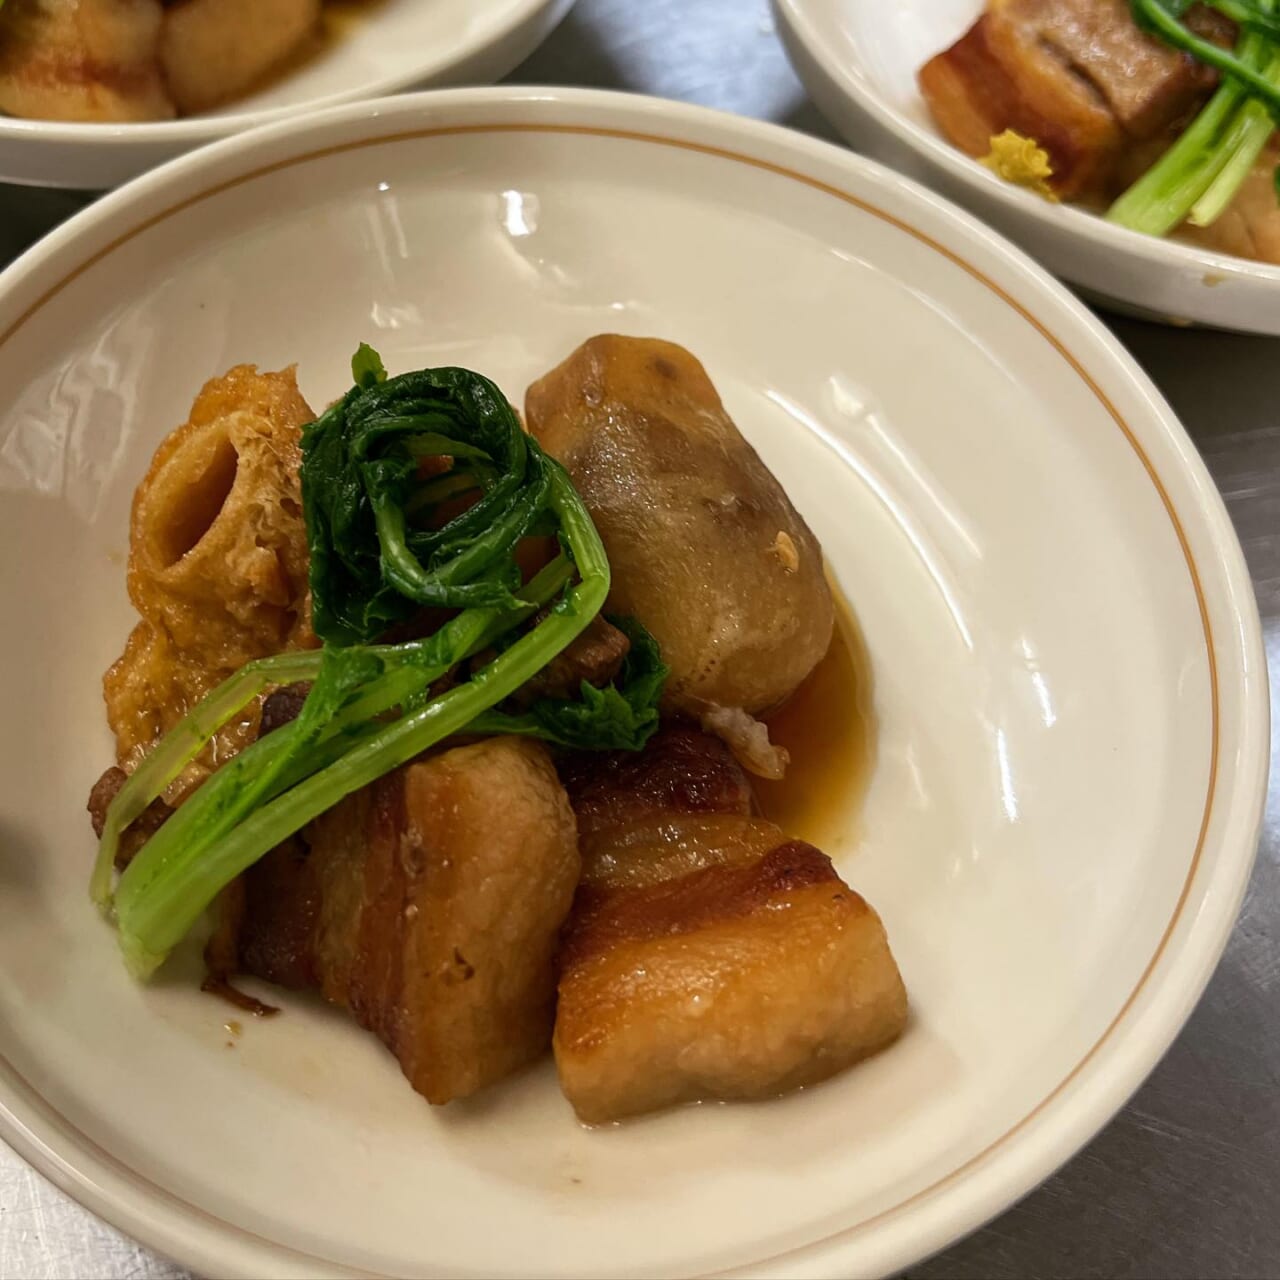 舞米豚の角煮
里芋と麩。

舞米豚は脂身が甘く
里芋もほくほく
麩は旨味しみしみです。

ヤマキチ夜のご宴会は5名様以上
一日一組の完全予約制です。